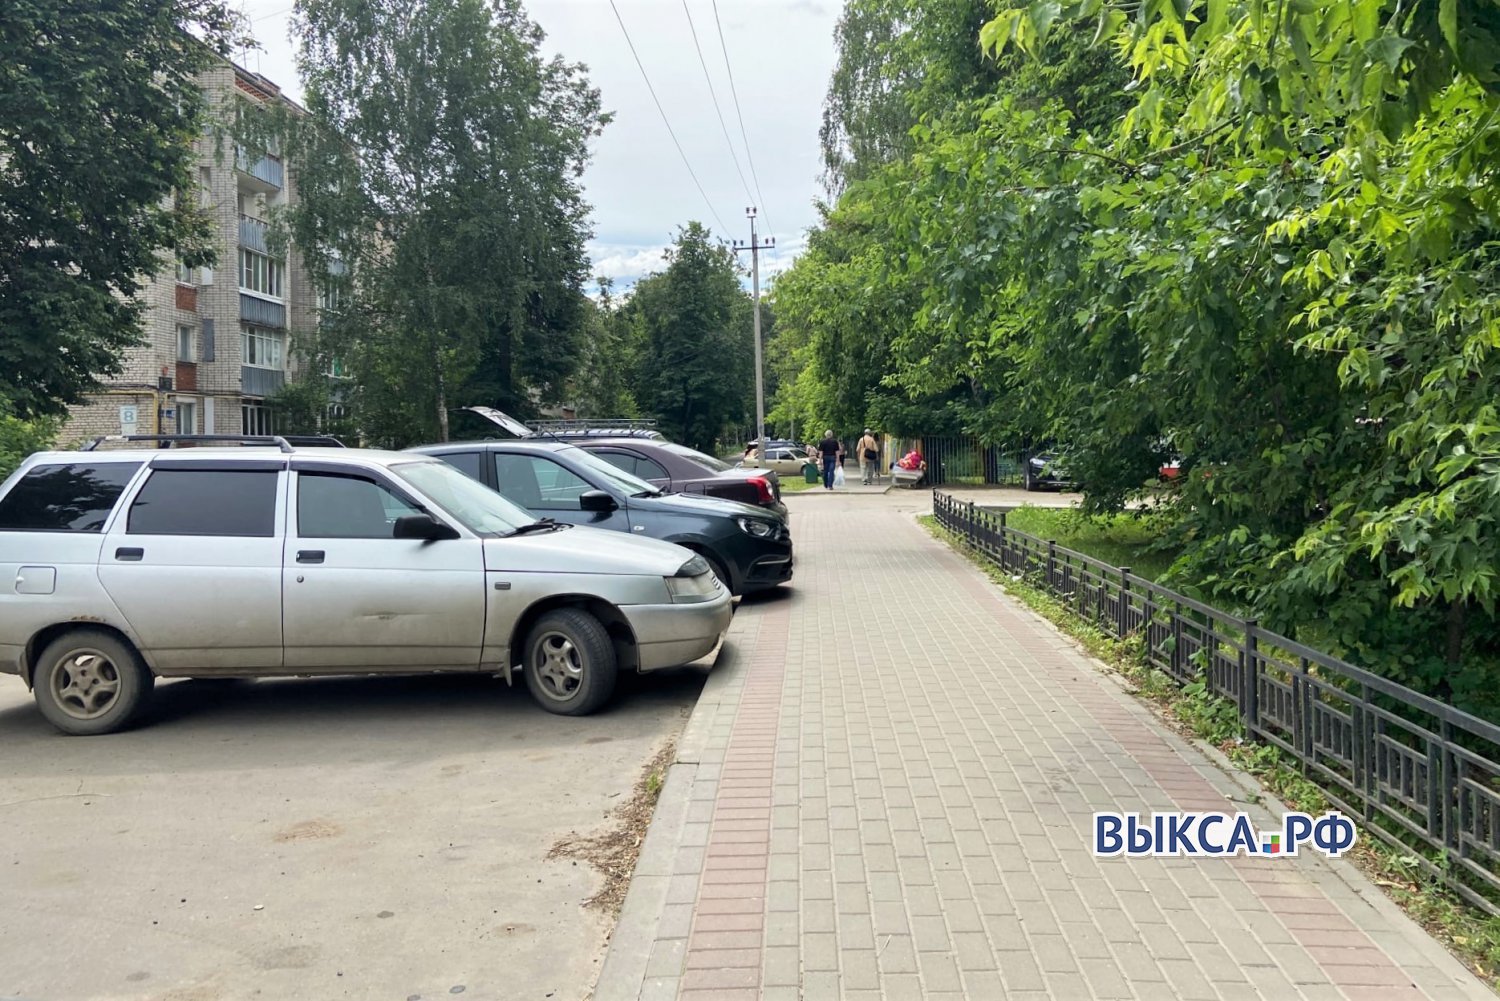 Ремонт тротуаров обойдётся в 2 млн рублей